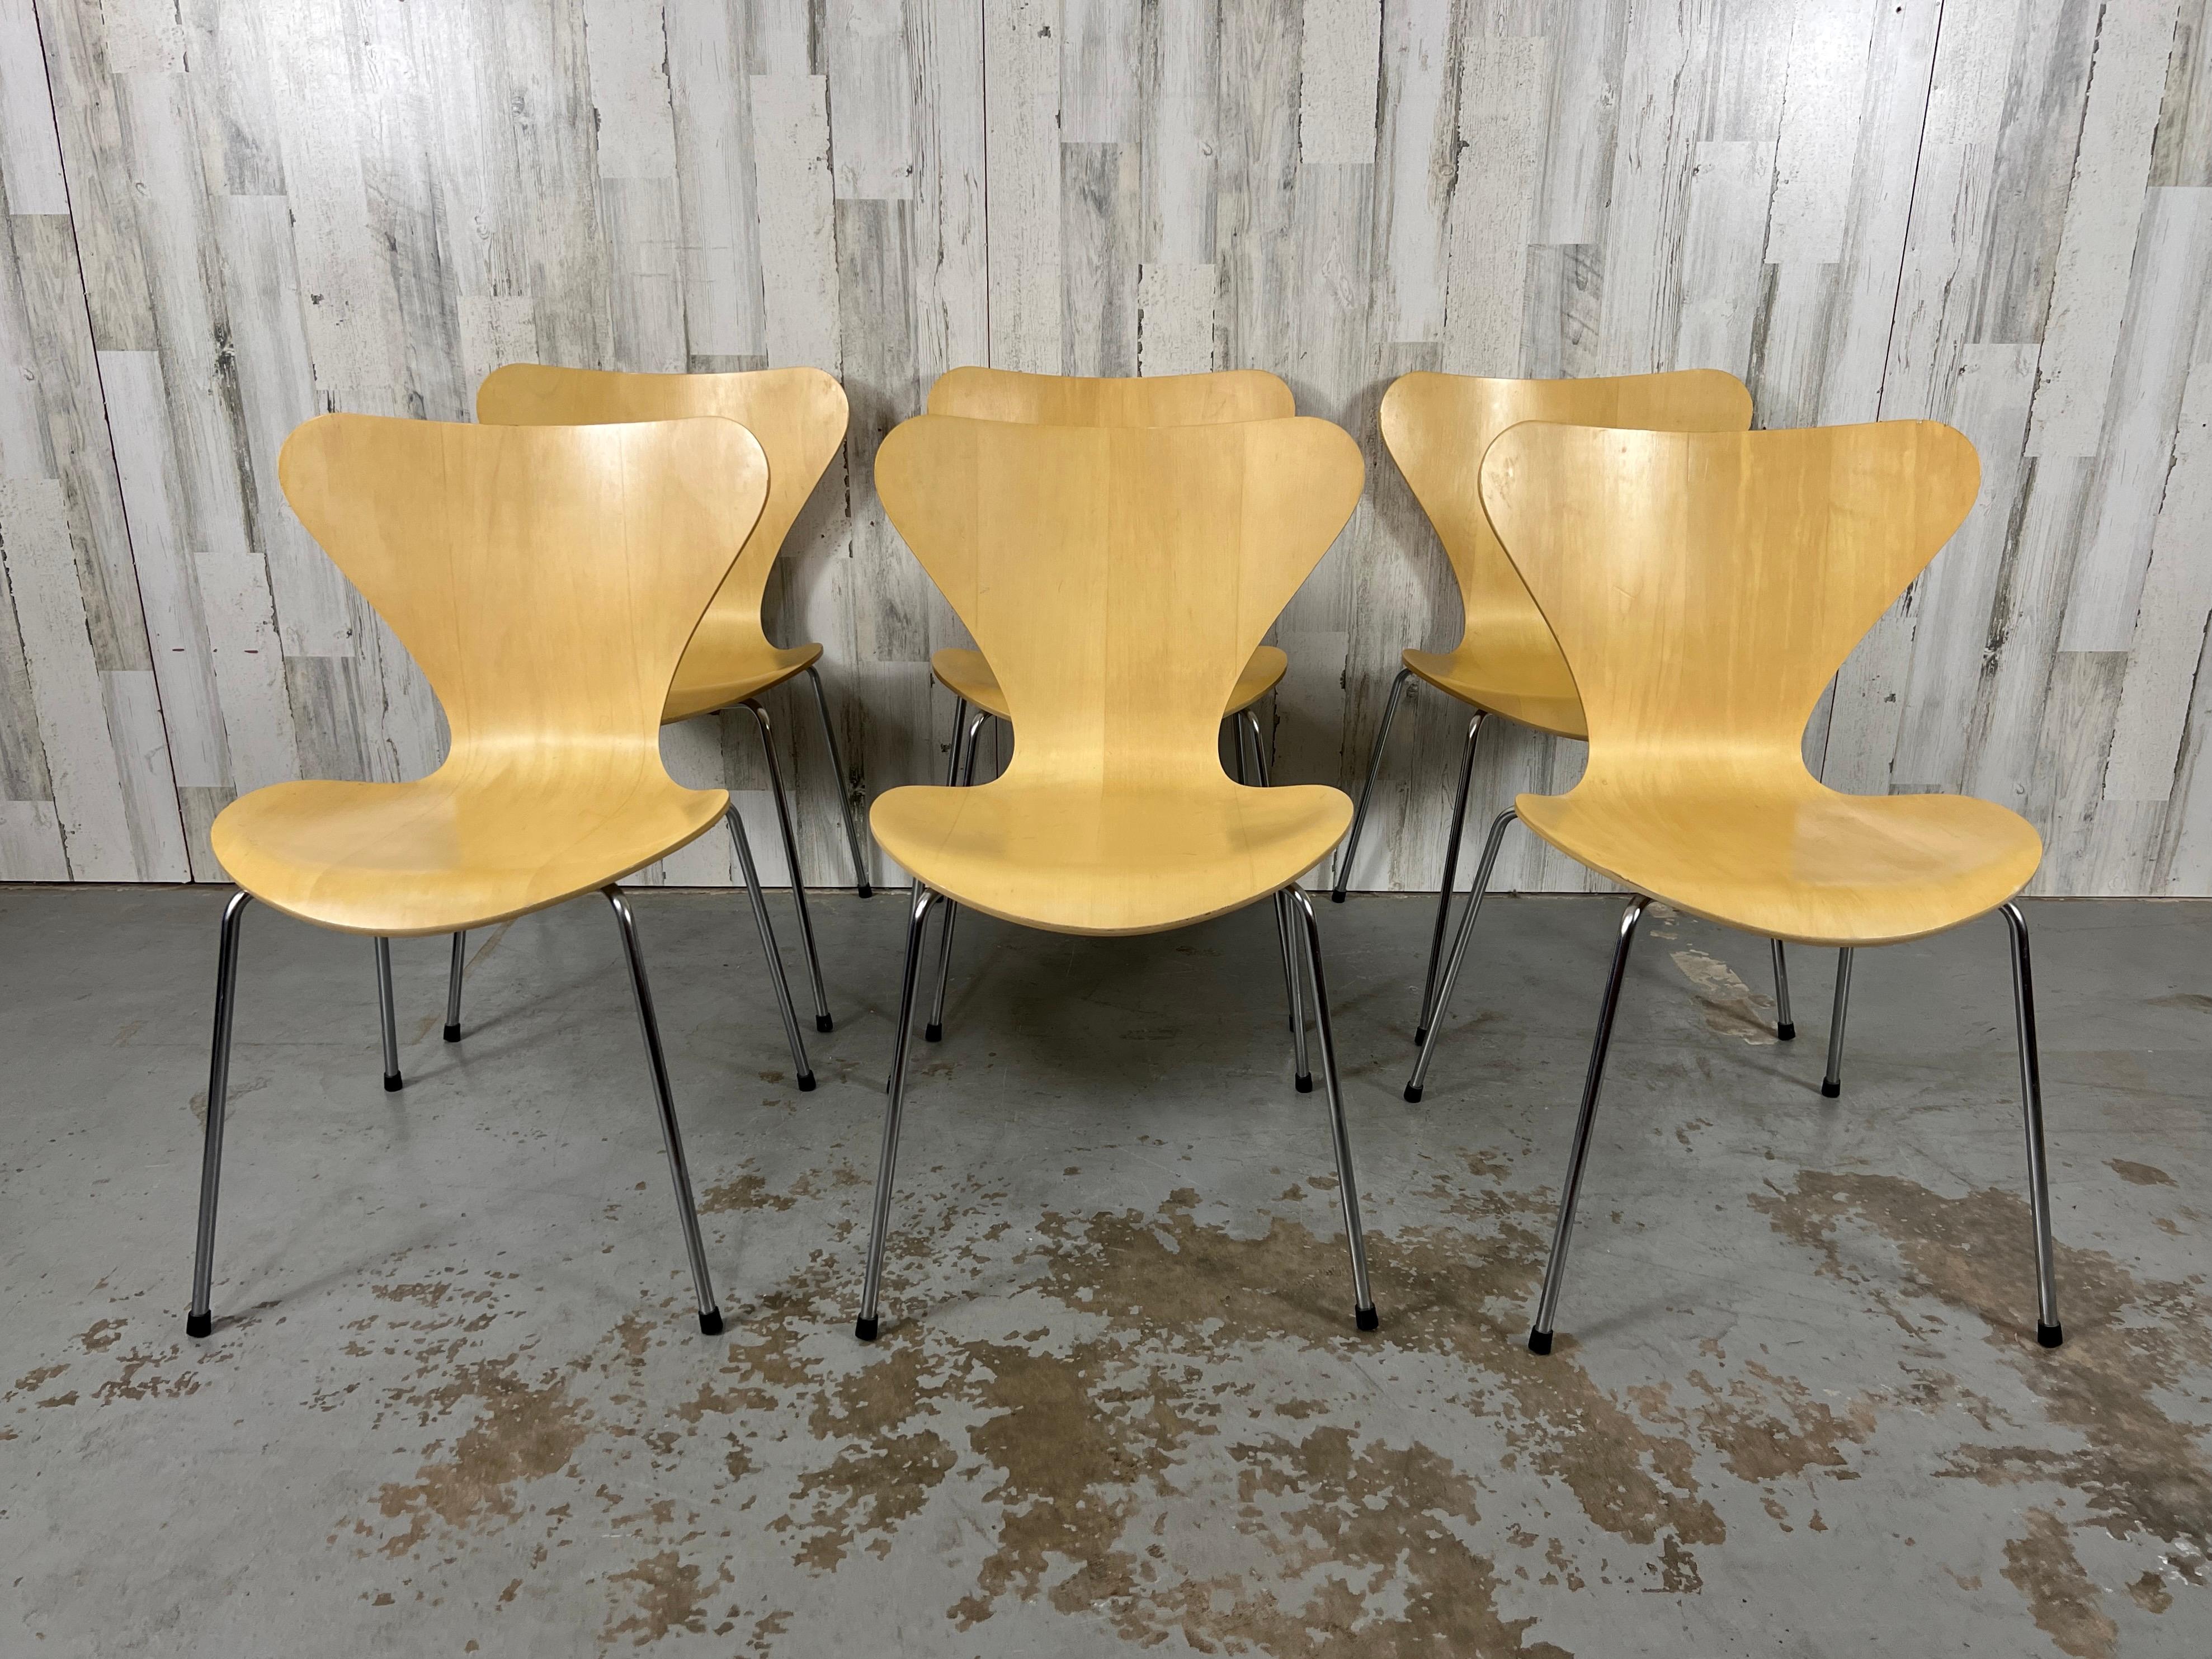 Ikonische Serie von Arne Jacobsen: 7 stapelbare Stühle aus natürlichem Buchenholz für Fritz Hansen. Der schlanke, stapelbare Stuhl aktualisiert Jacobsens schlichten und sparsamen Stuhl Ant von 1952.